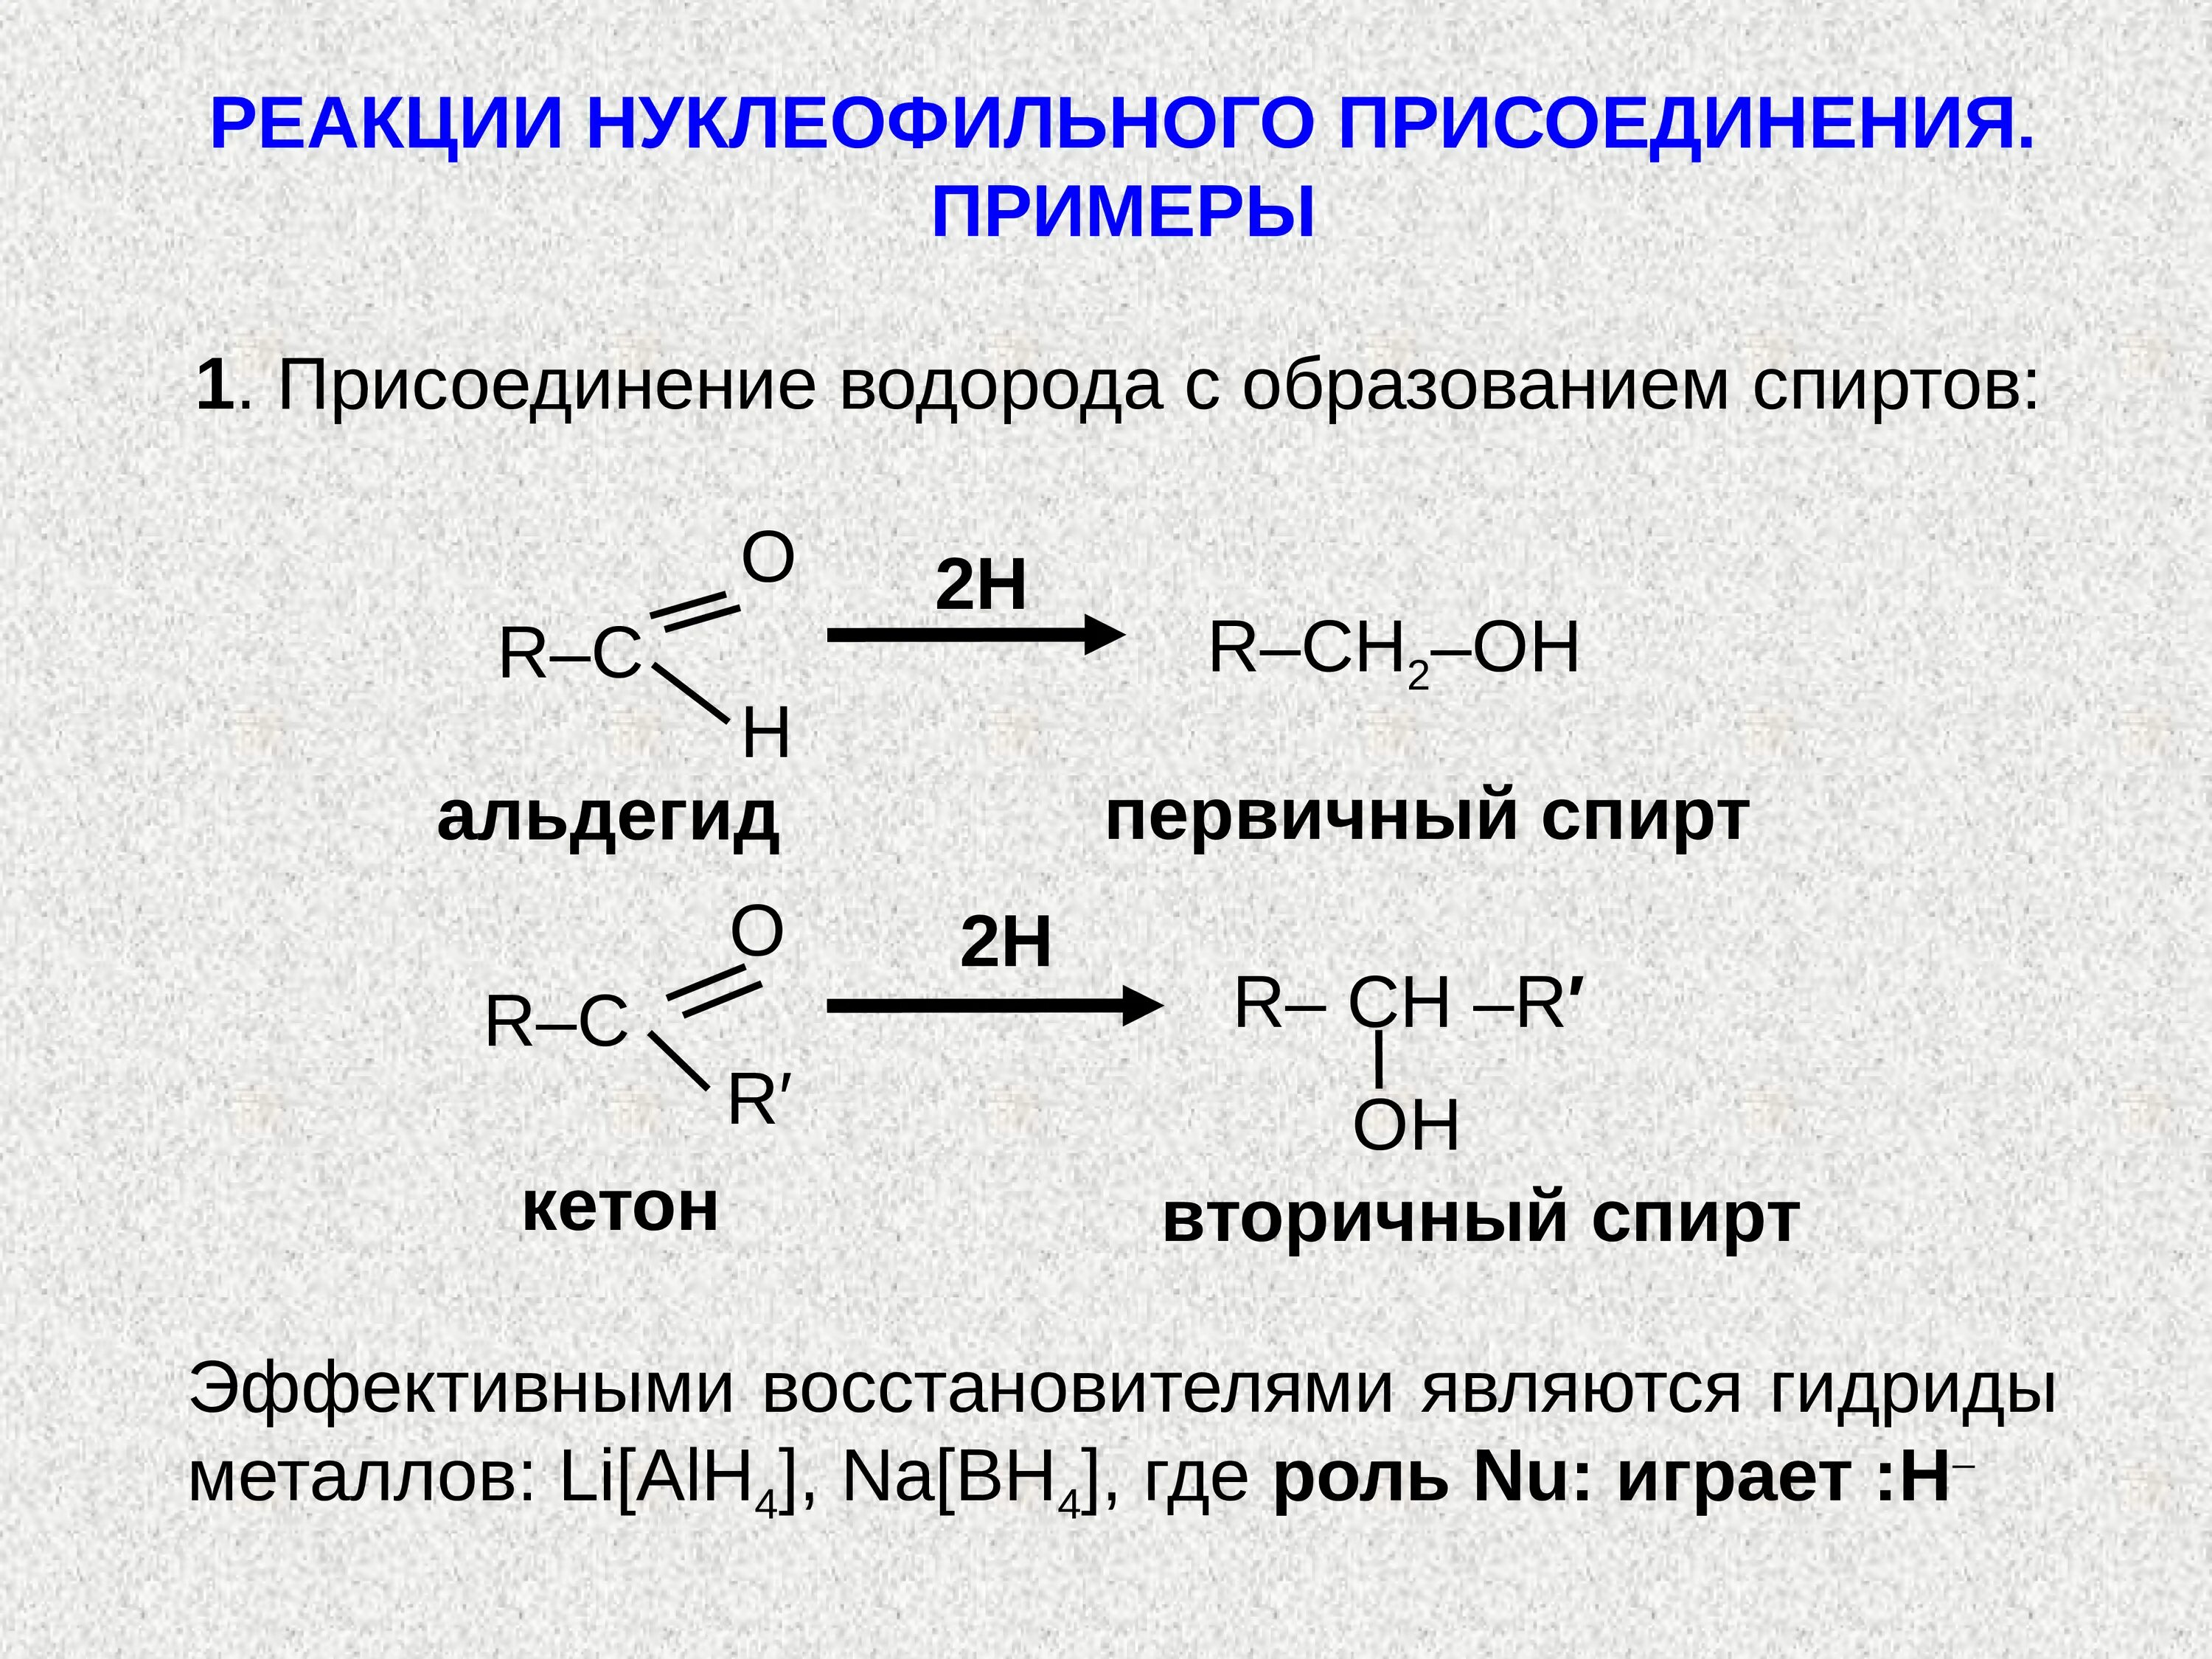 Реакция нуклеофильного присоединения альдегидов. Присоединение спиртов альдегидов и кетонов. Нуклеофильное присоединение альдегидов и кетонов. Реакции нуклеофильного присоединения альдегидов и кетонов. Взаимодействие кетонов с водой